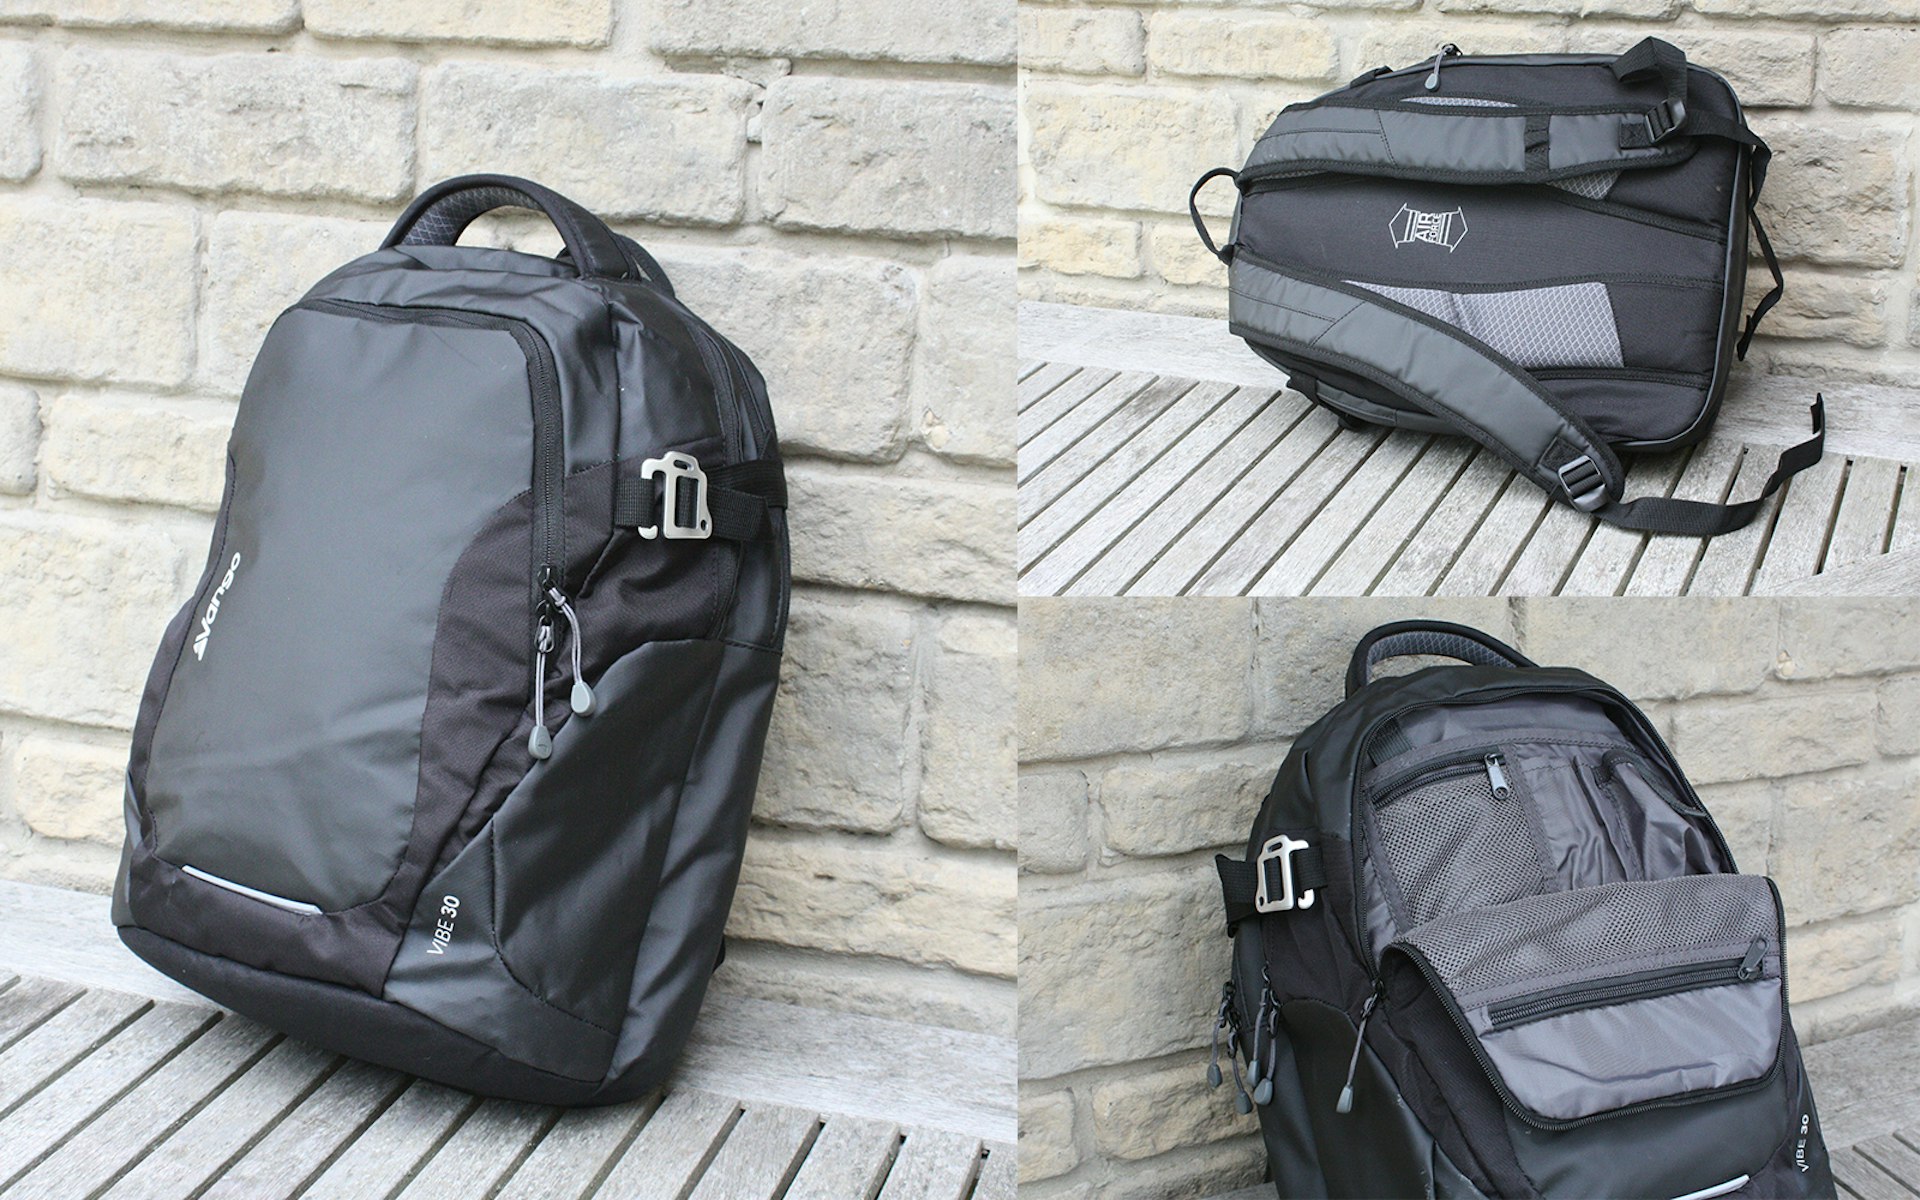 The Vango Vibe 30 backpack